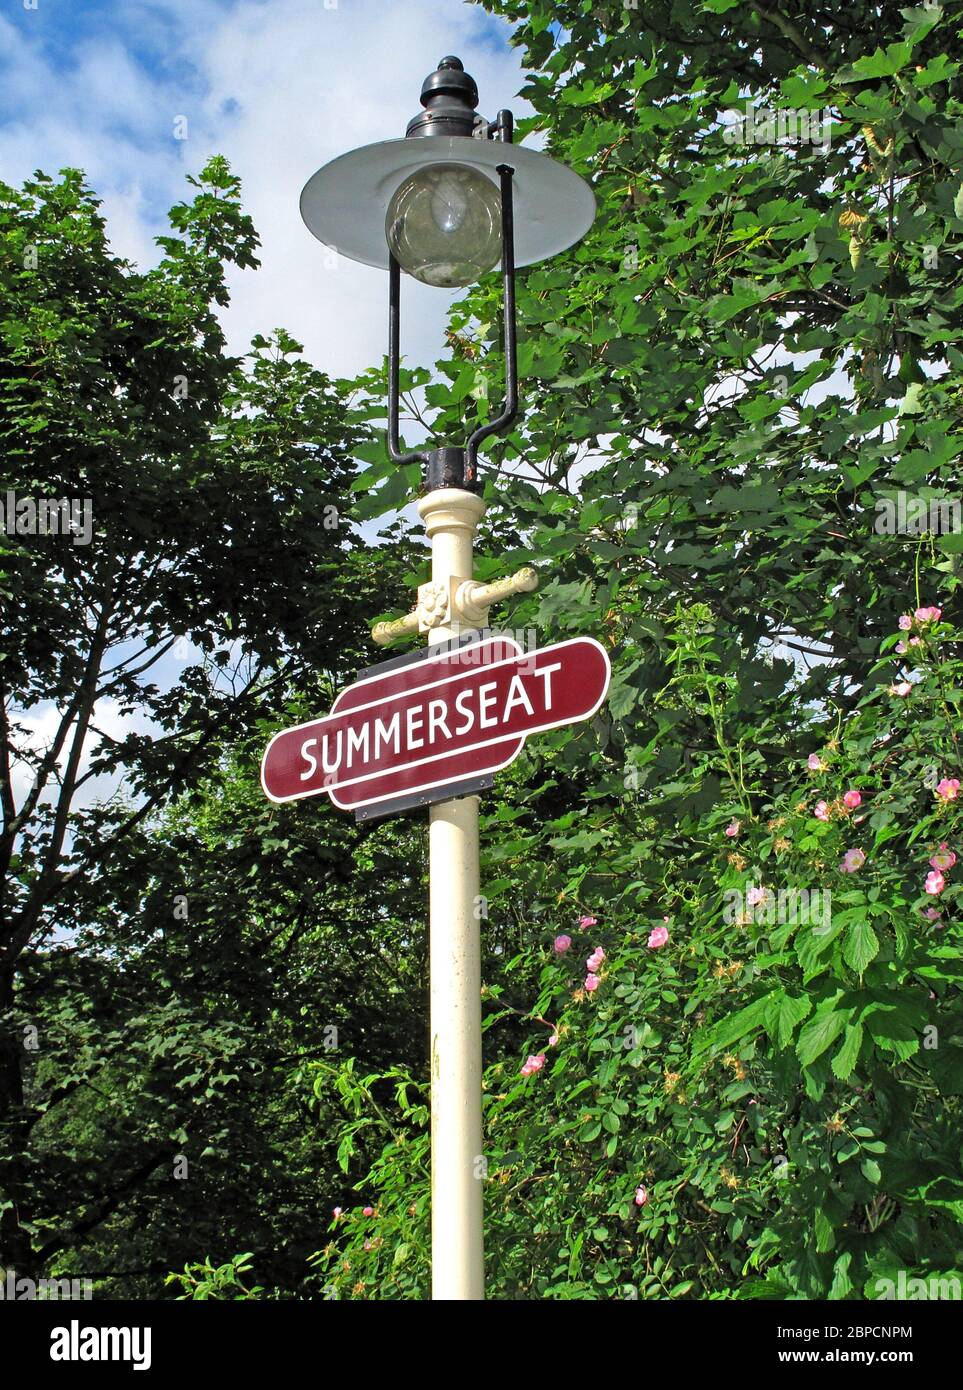 Summerseat Station Schild auf einer Lampe, Lancashire, England, Großbritannien Stockfoto